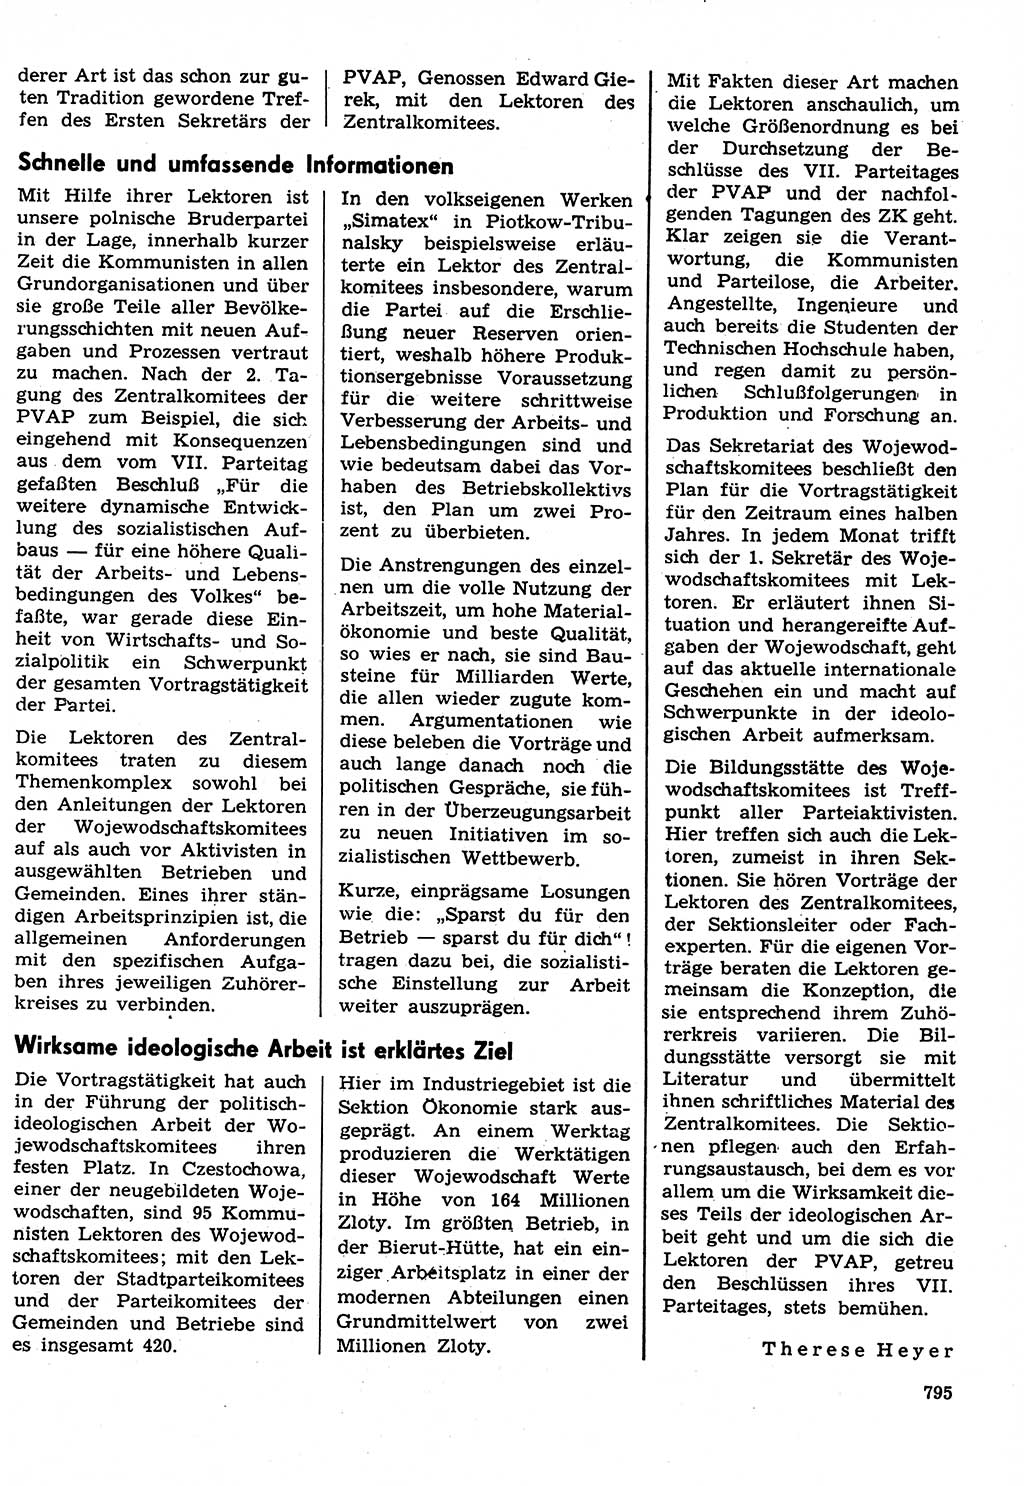 Neuer Weg (NW), Organ des Zentralkomitees (ZK) der SED (Sozialistische Einheitspartei Deutschlands) für Fragen des Parteilebens, 31. Jahrgang [Deutsche Demokratische Republik (DDR)] 1976, Seite 795 (NW ZK SED DDR 1976, S. 795)